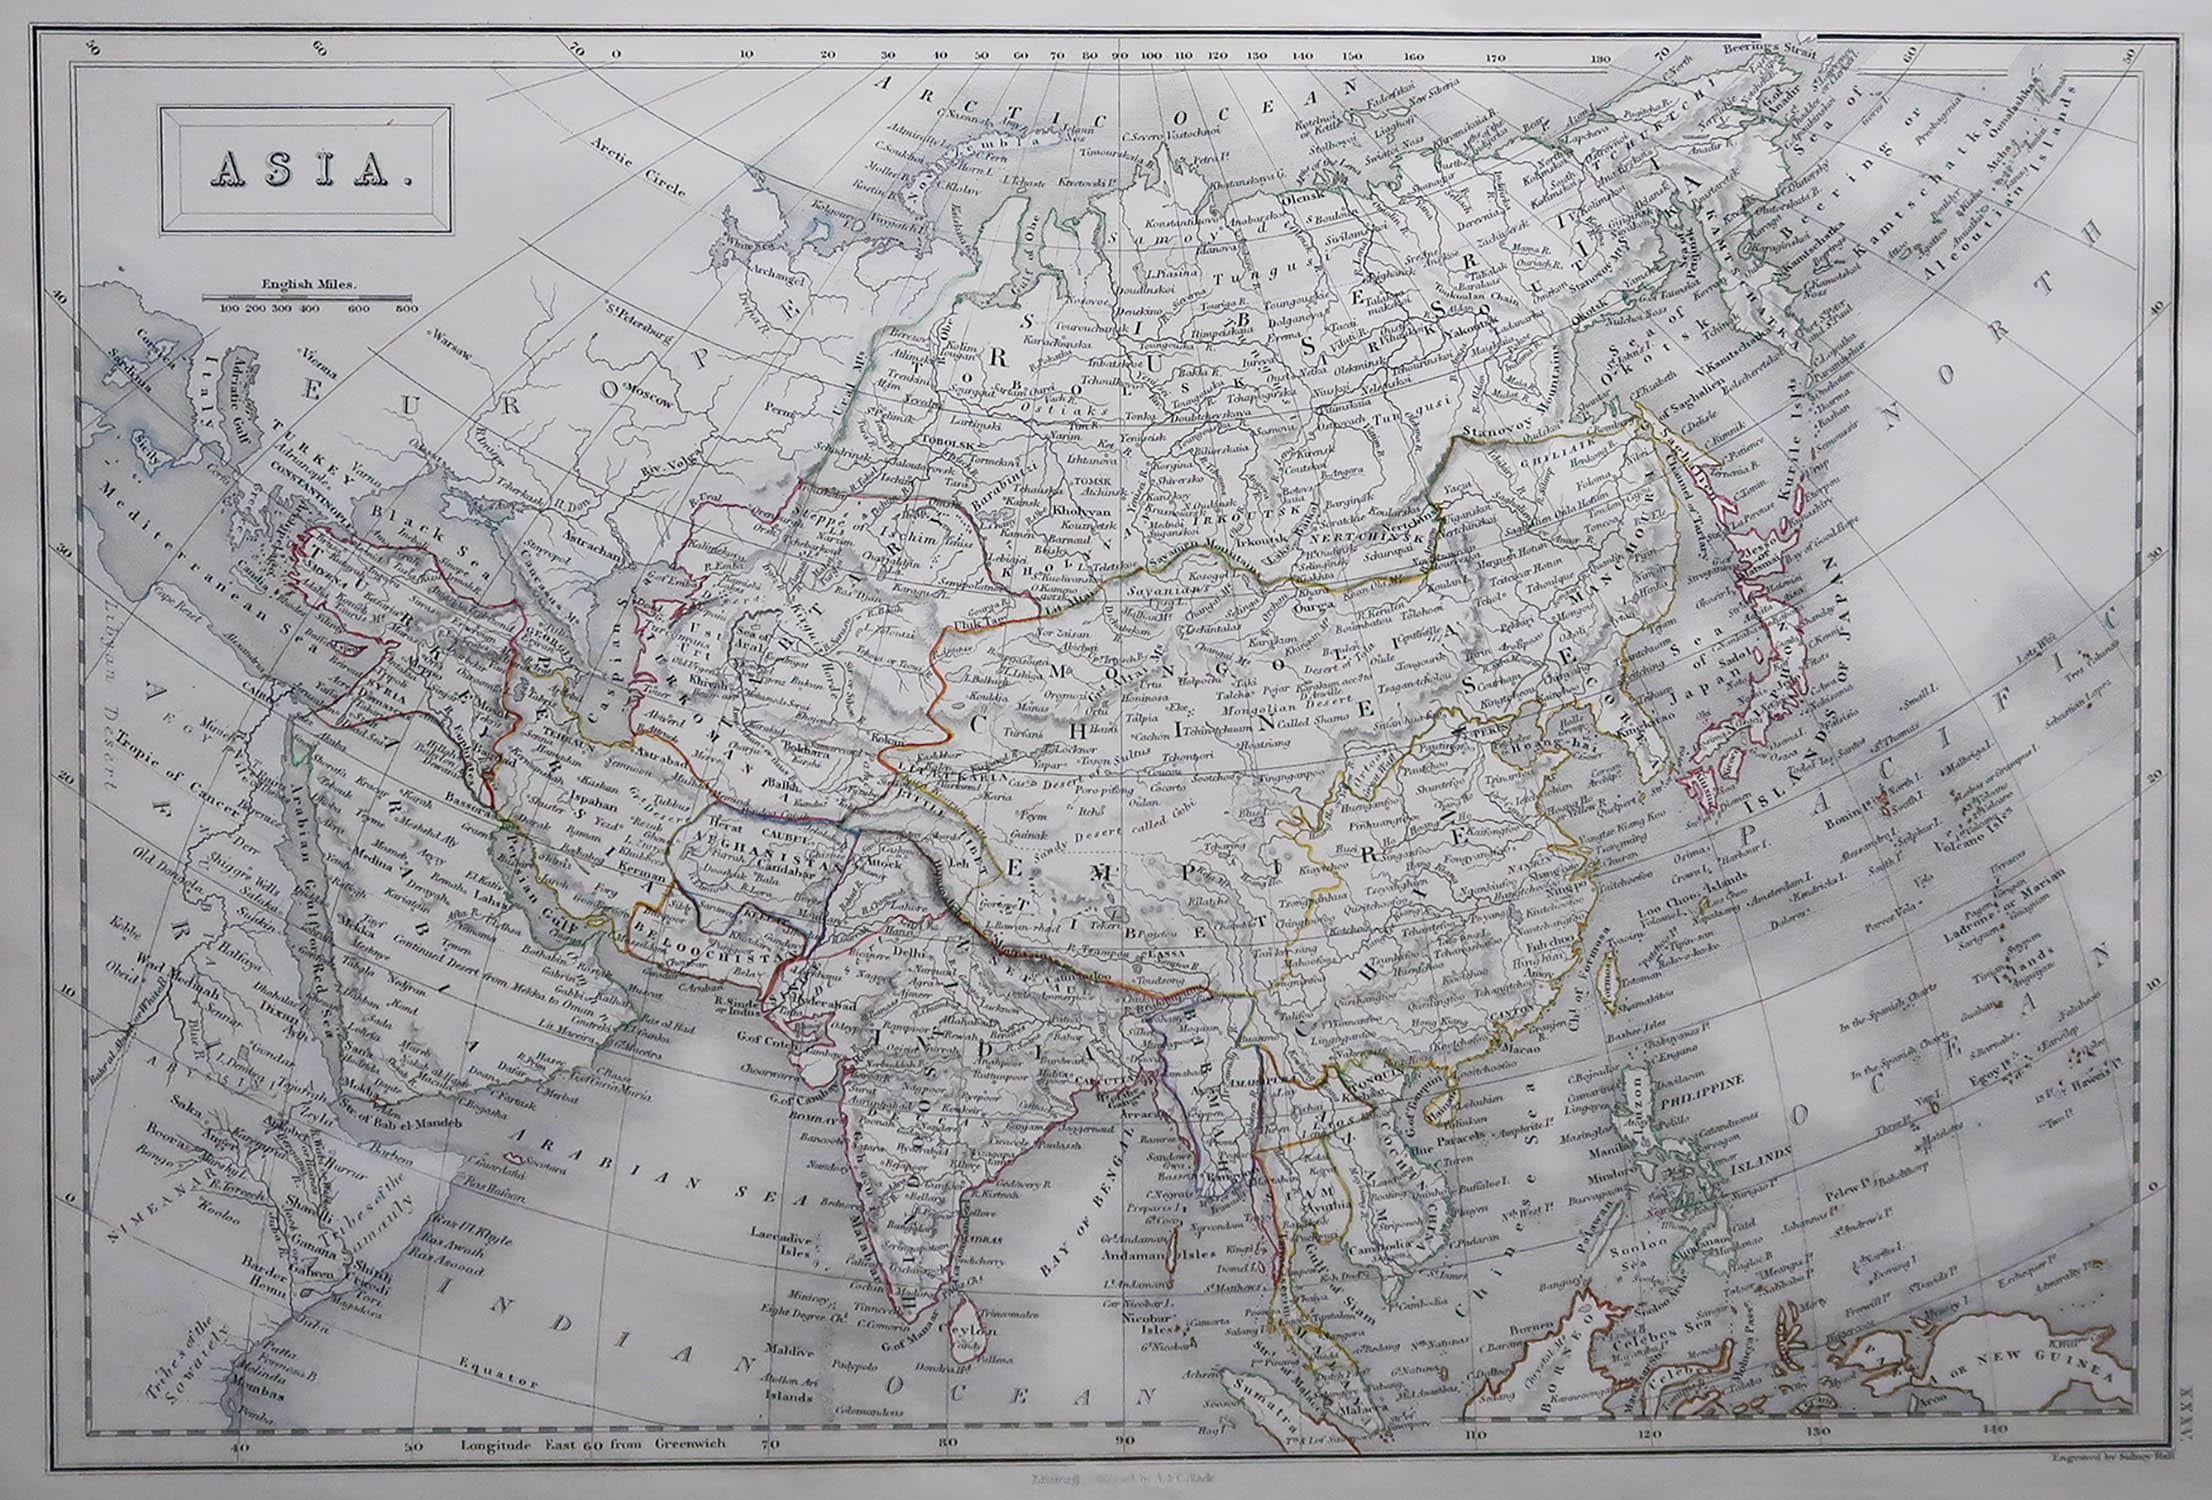 Grande carte de l'Asie

Dessiné et gravé par Sidney Hall

Gravure sur acier 

Schéma de couleur original

Publié par A & C Black. 1847

Non encadré

Expédition gratuite

